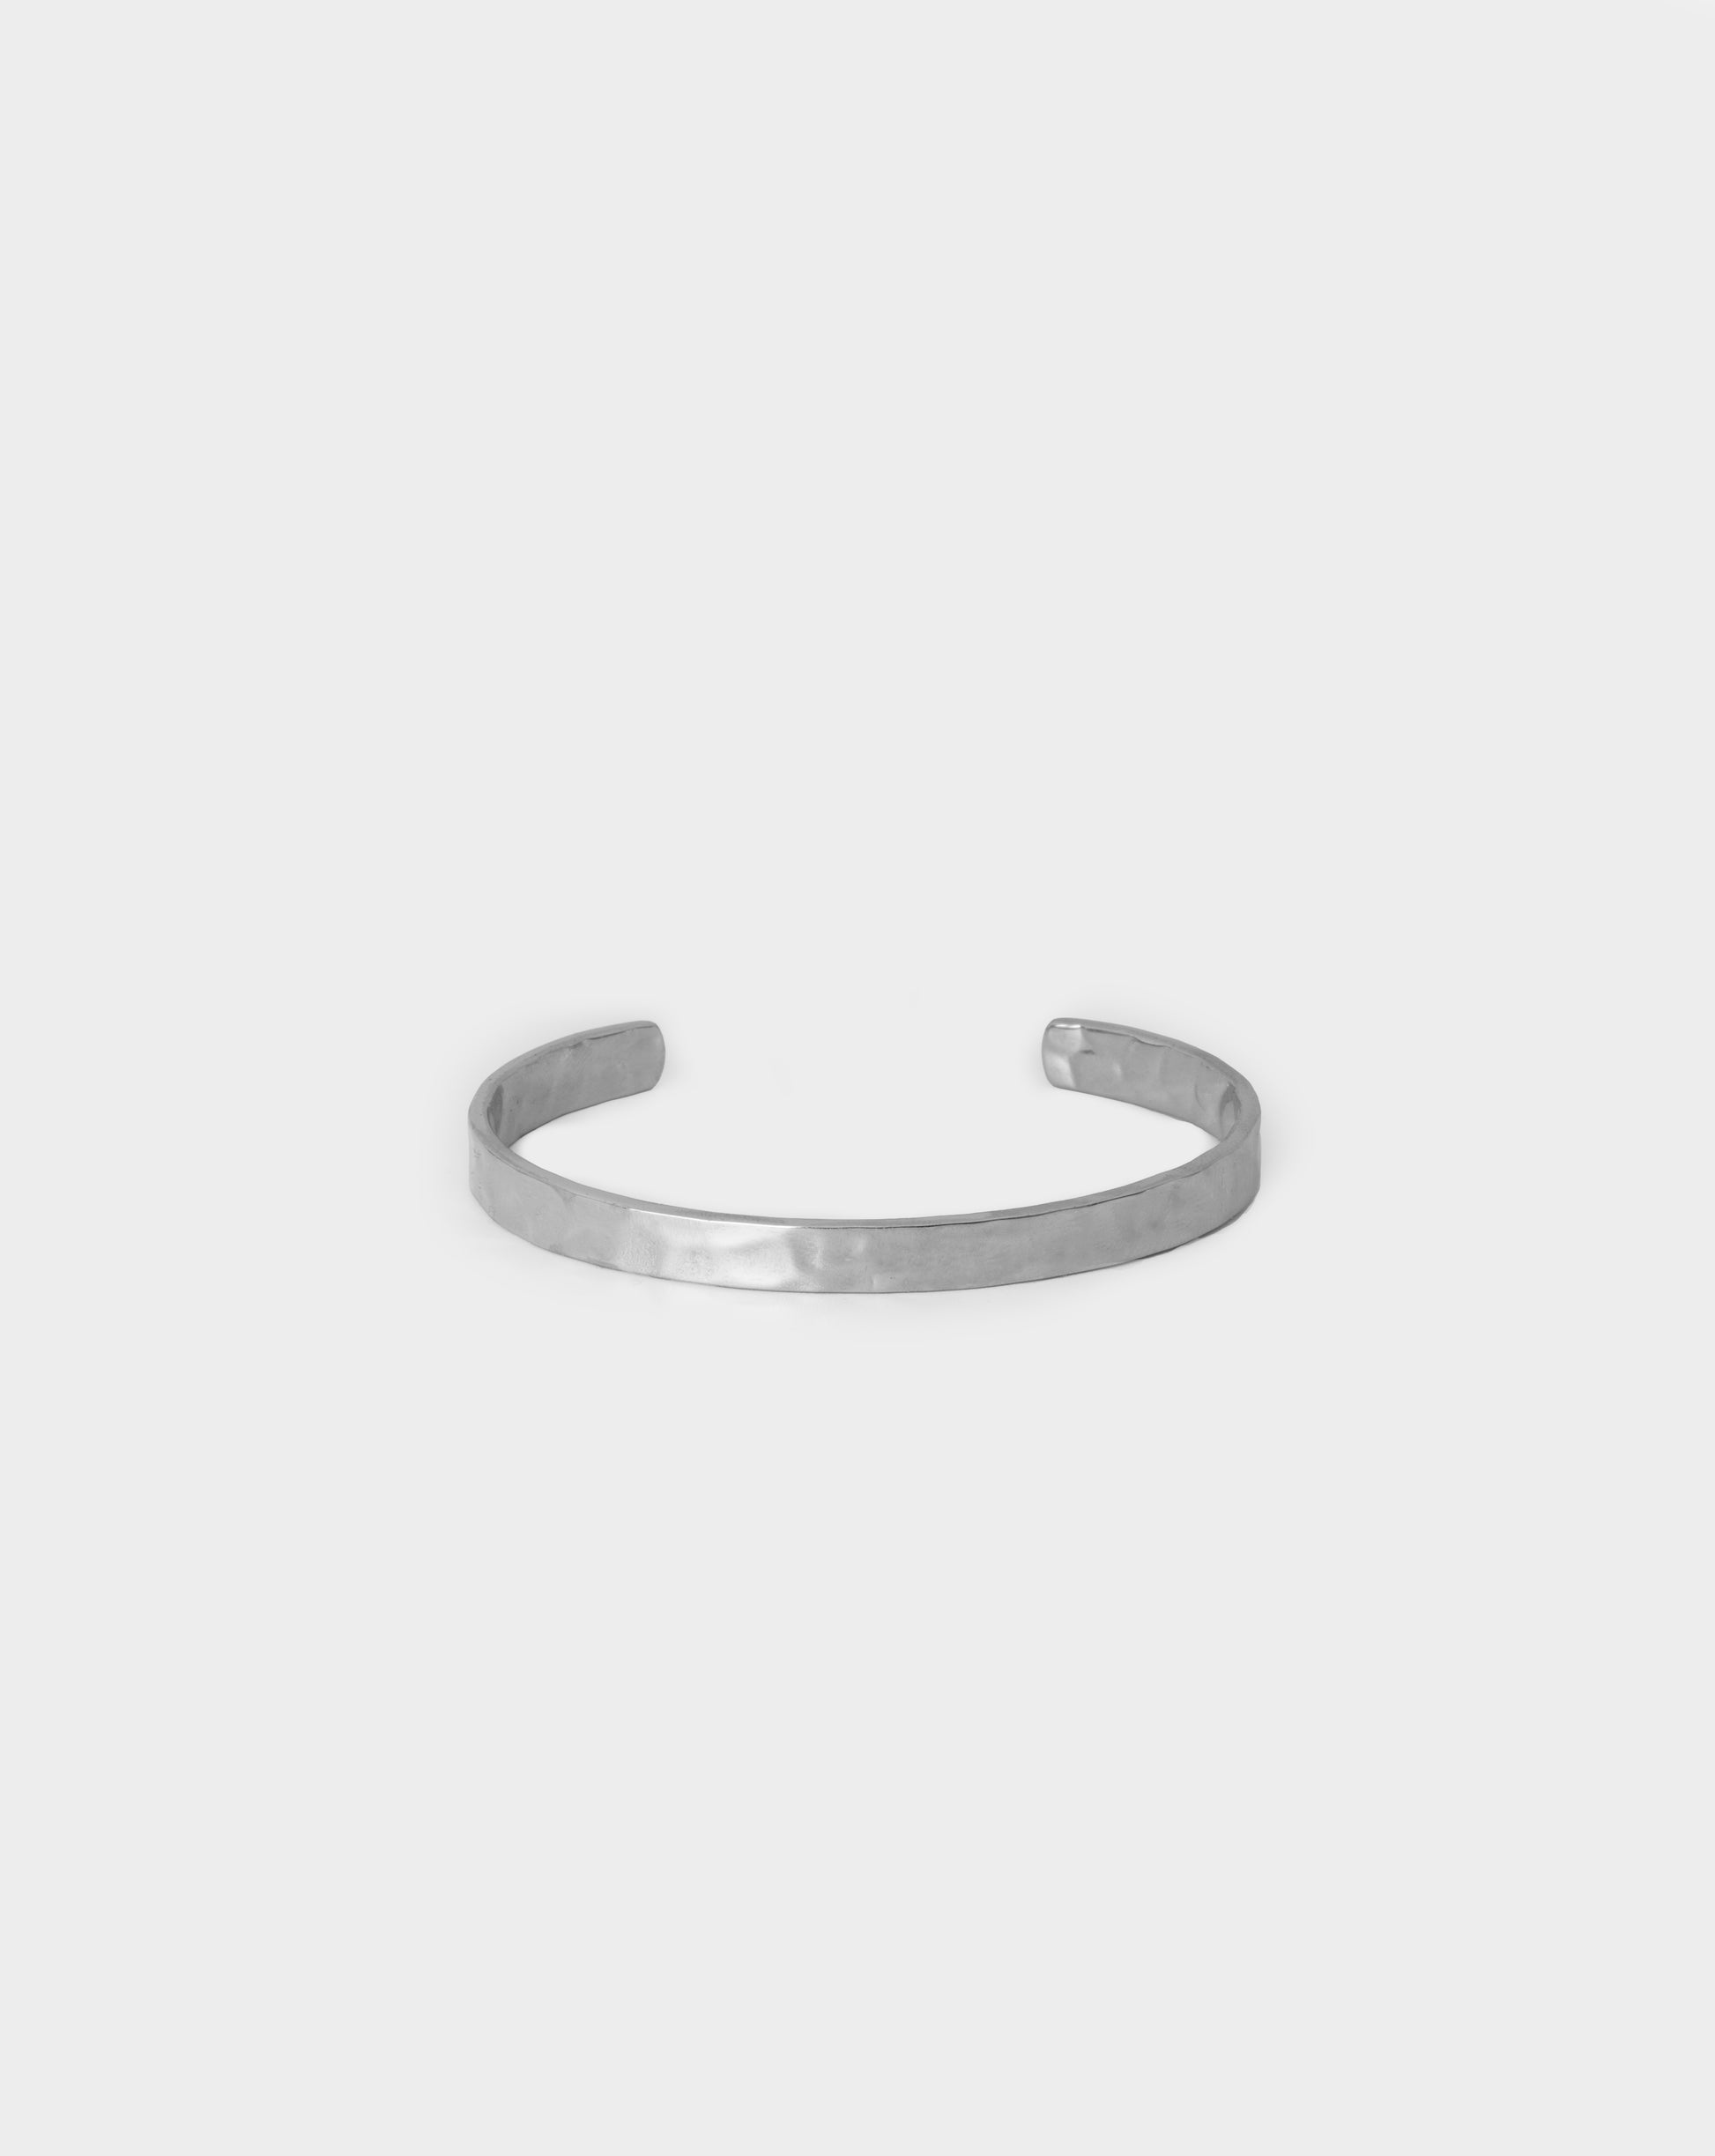 Mare Bracelet Silver – Acardi